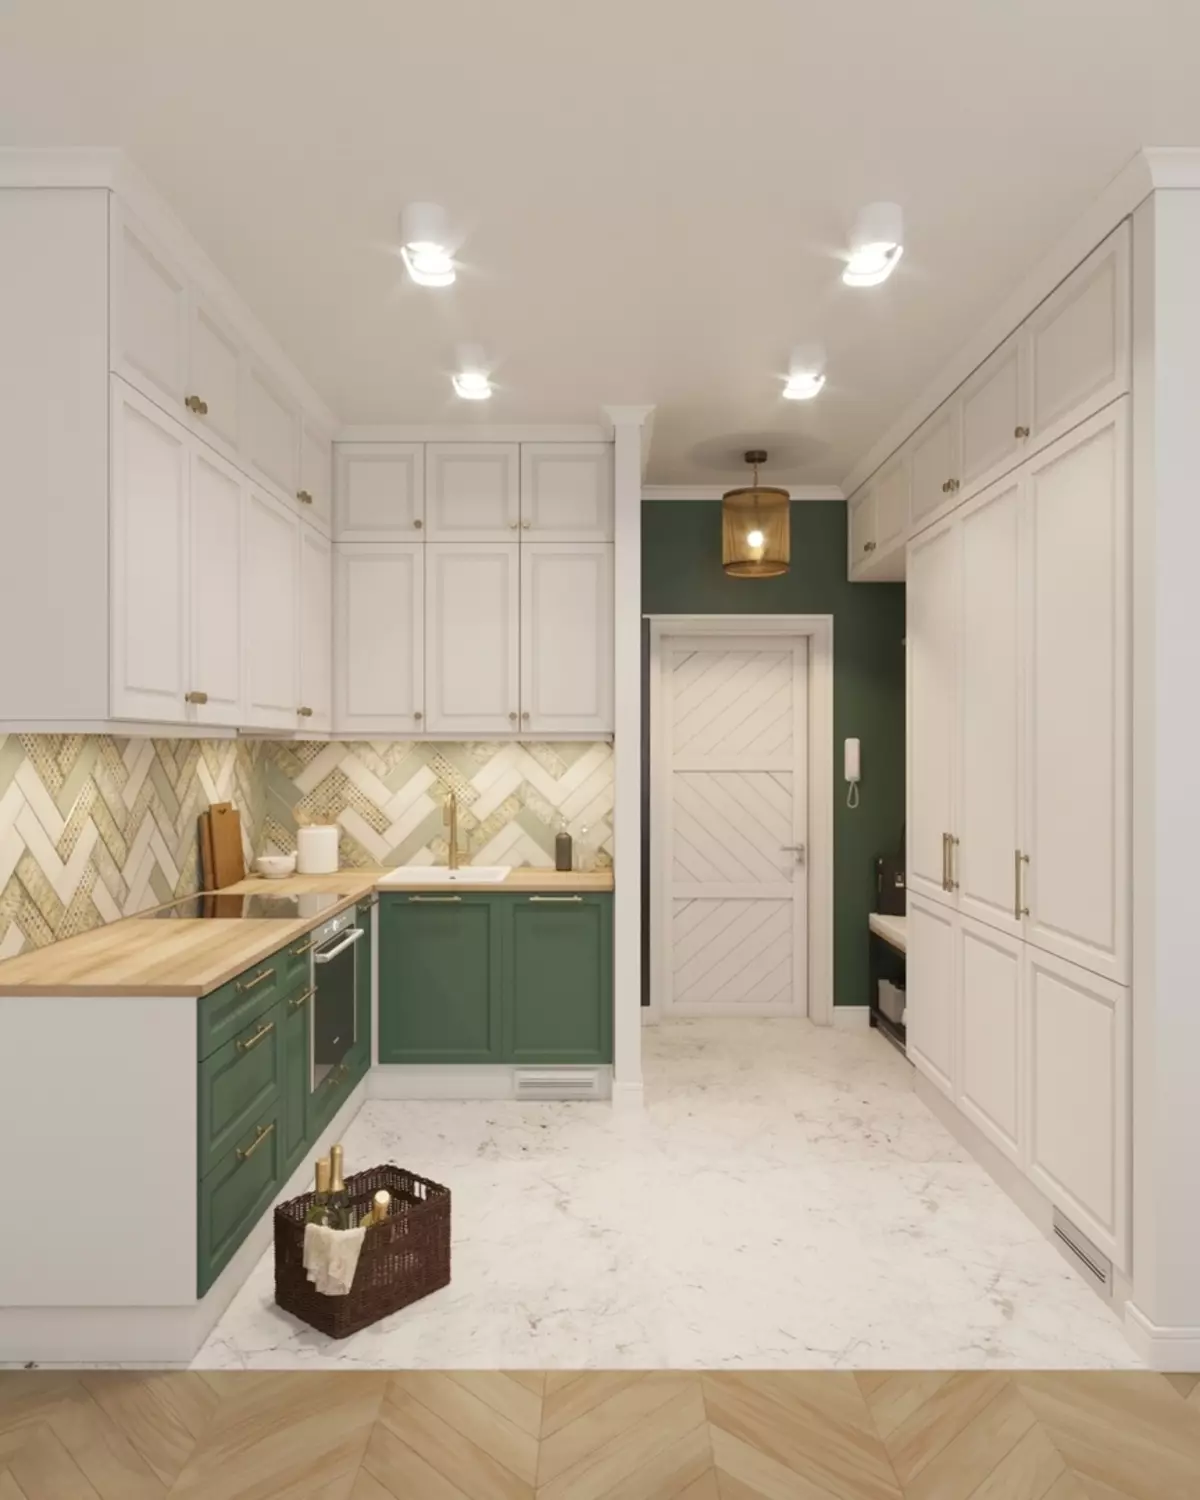 翡翠厨房（35张）：在室内设计，白色翡翠厨房等组合颜色特征 9360_10